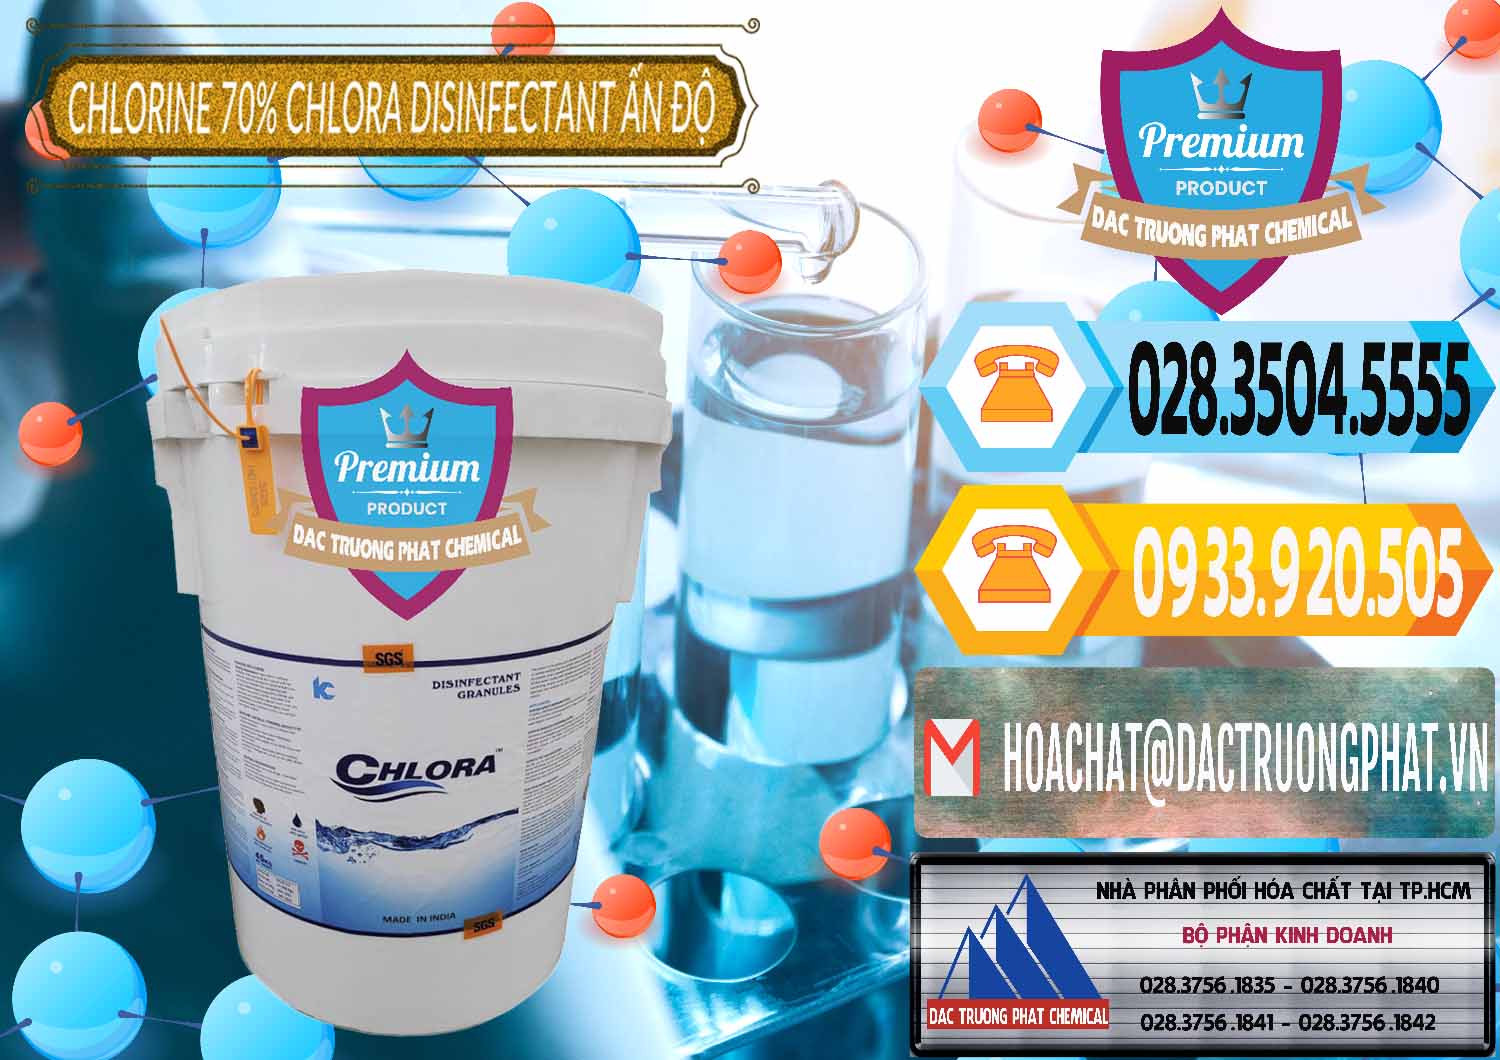 Chuyên bán _ cung cấp Chlorine – Clorin 70% Chlora Disinfectant Ấn Độ India - 0213 - Nhà cung cấp & bán hóa chất tại TP.HCM - hoachattayrua.net